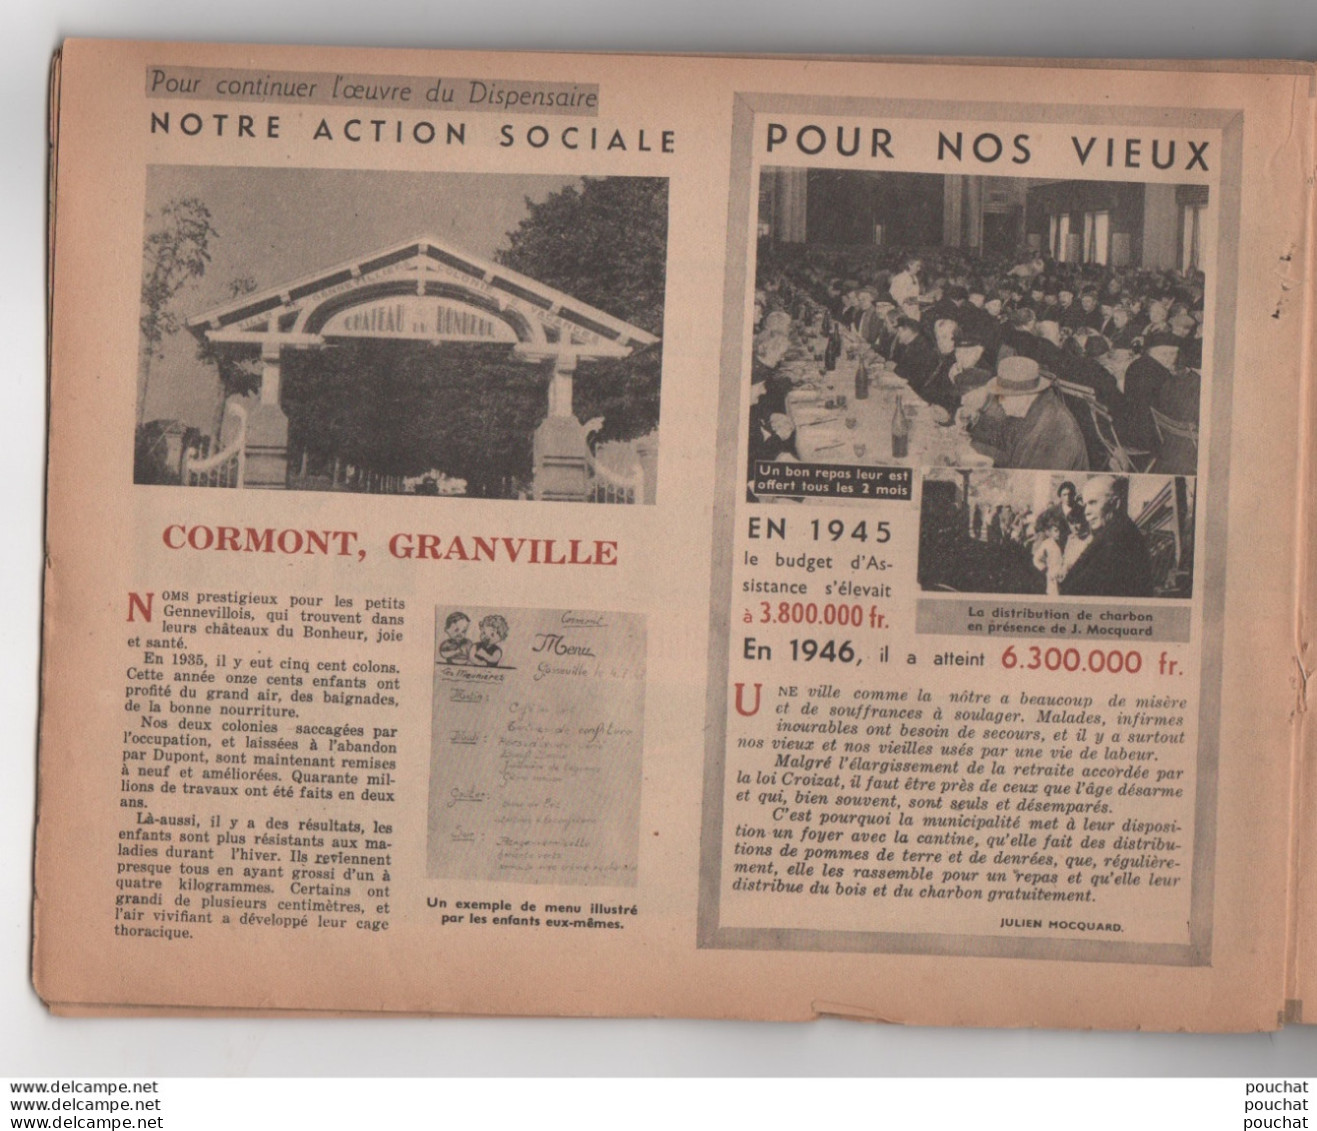 92) VILLE DE GENNEVILLIERS - BULLETIN MUNICIPAL DE 1947 A 1952 - AMENAGEMENTS , ASSOCIATIONS , POLITIQUE - (18 SCANS) - Ile-de-France